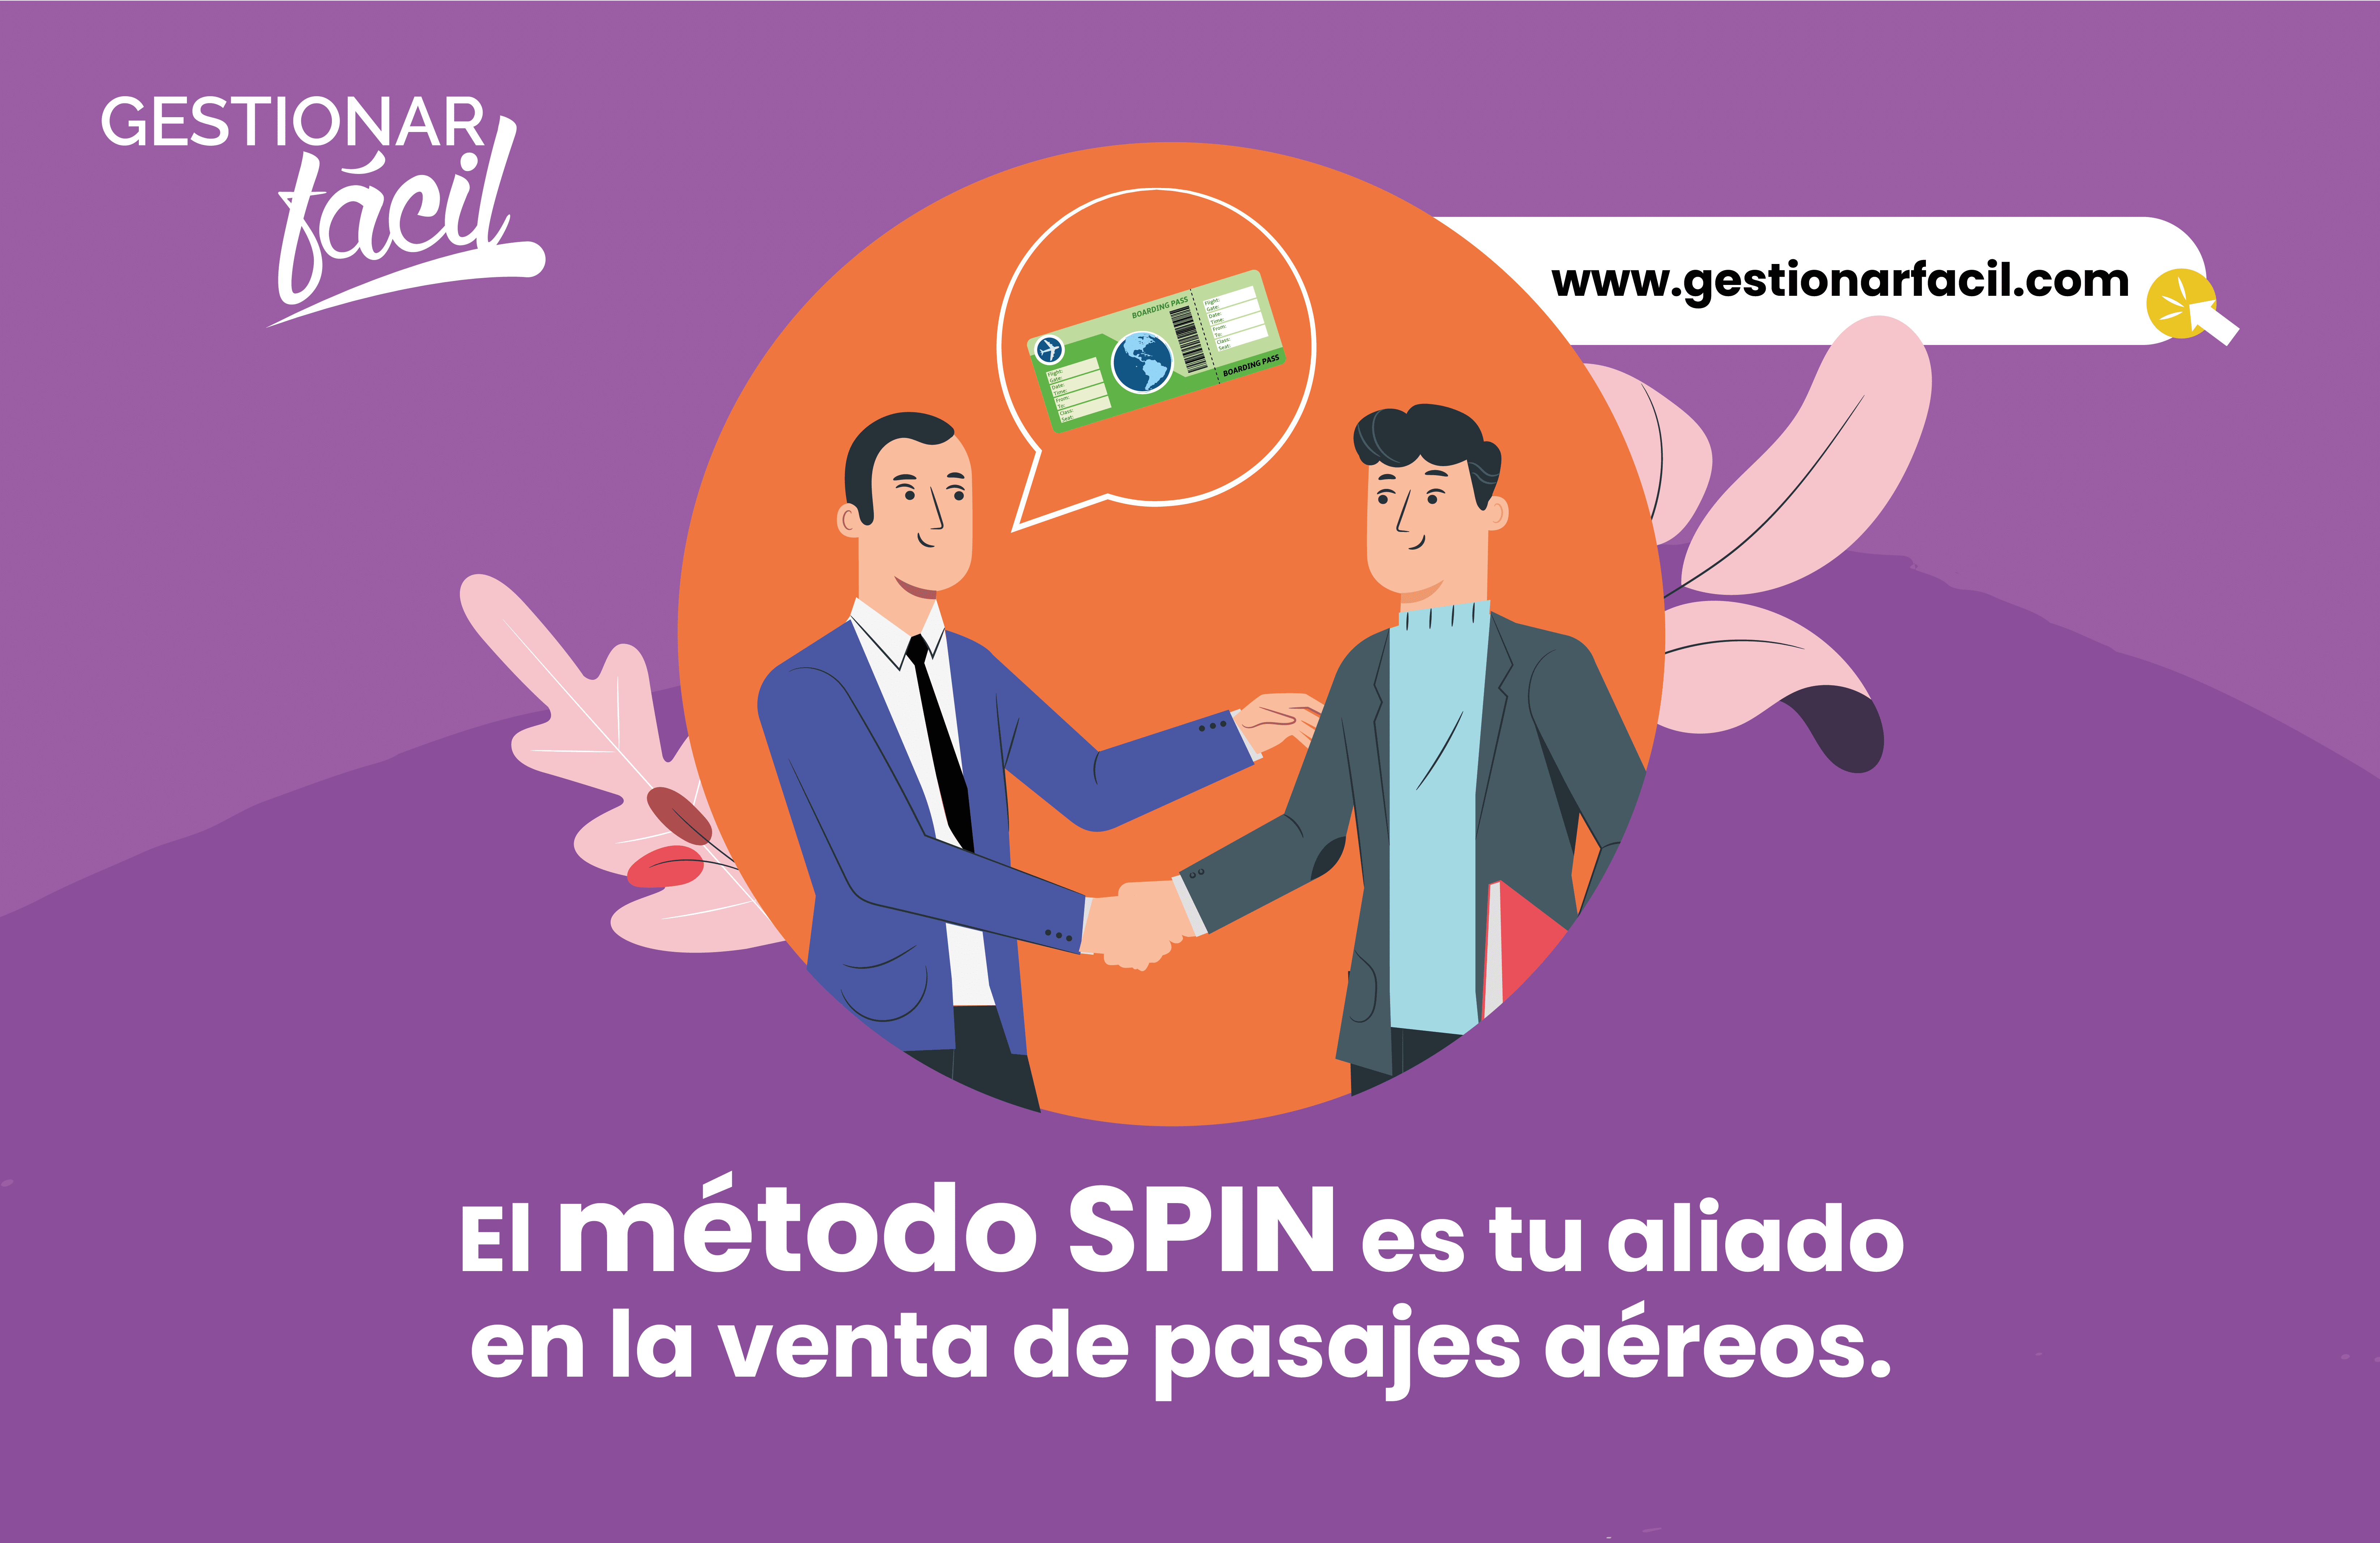 El método SPIN es tu aliado en la venta de pasajes aéreos.